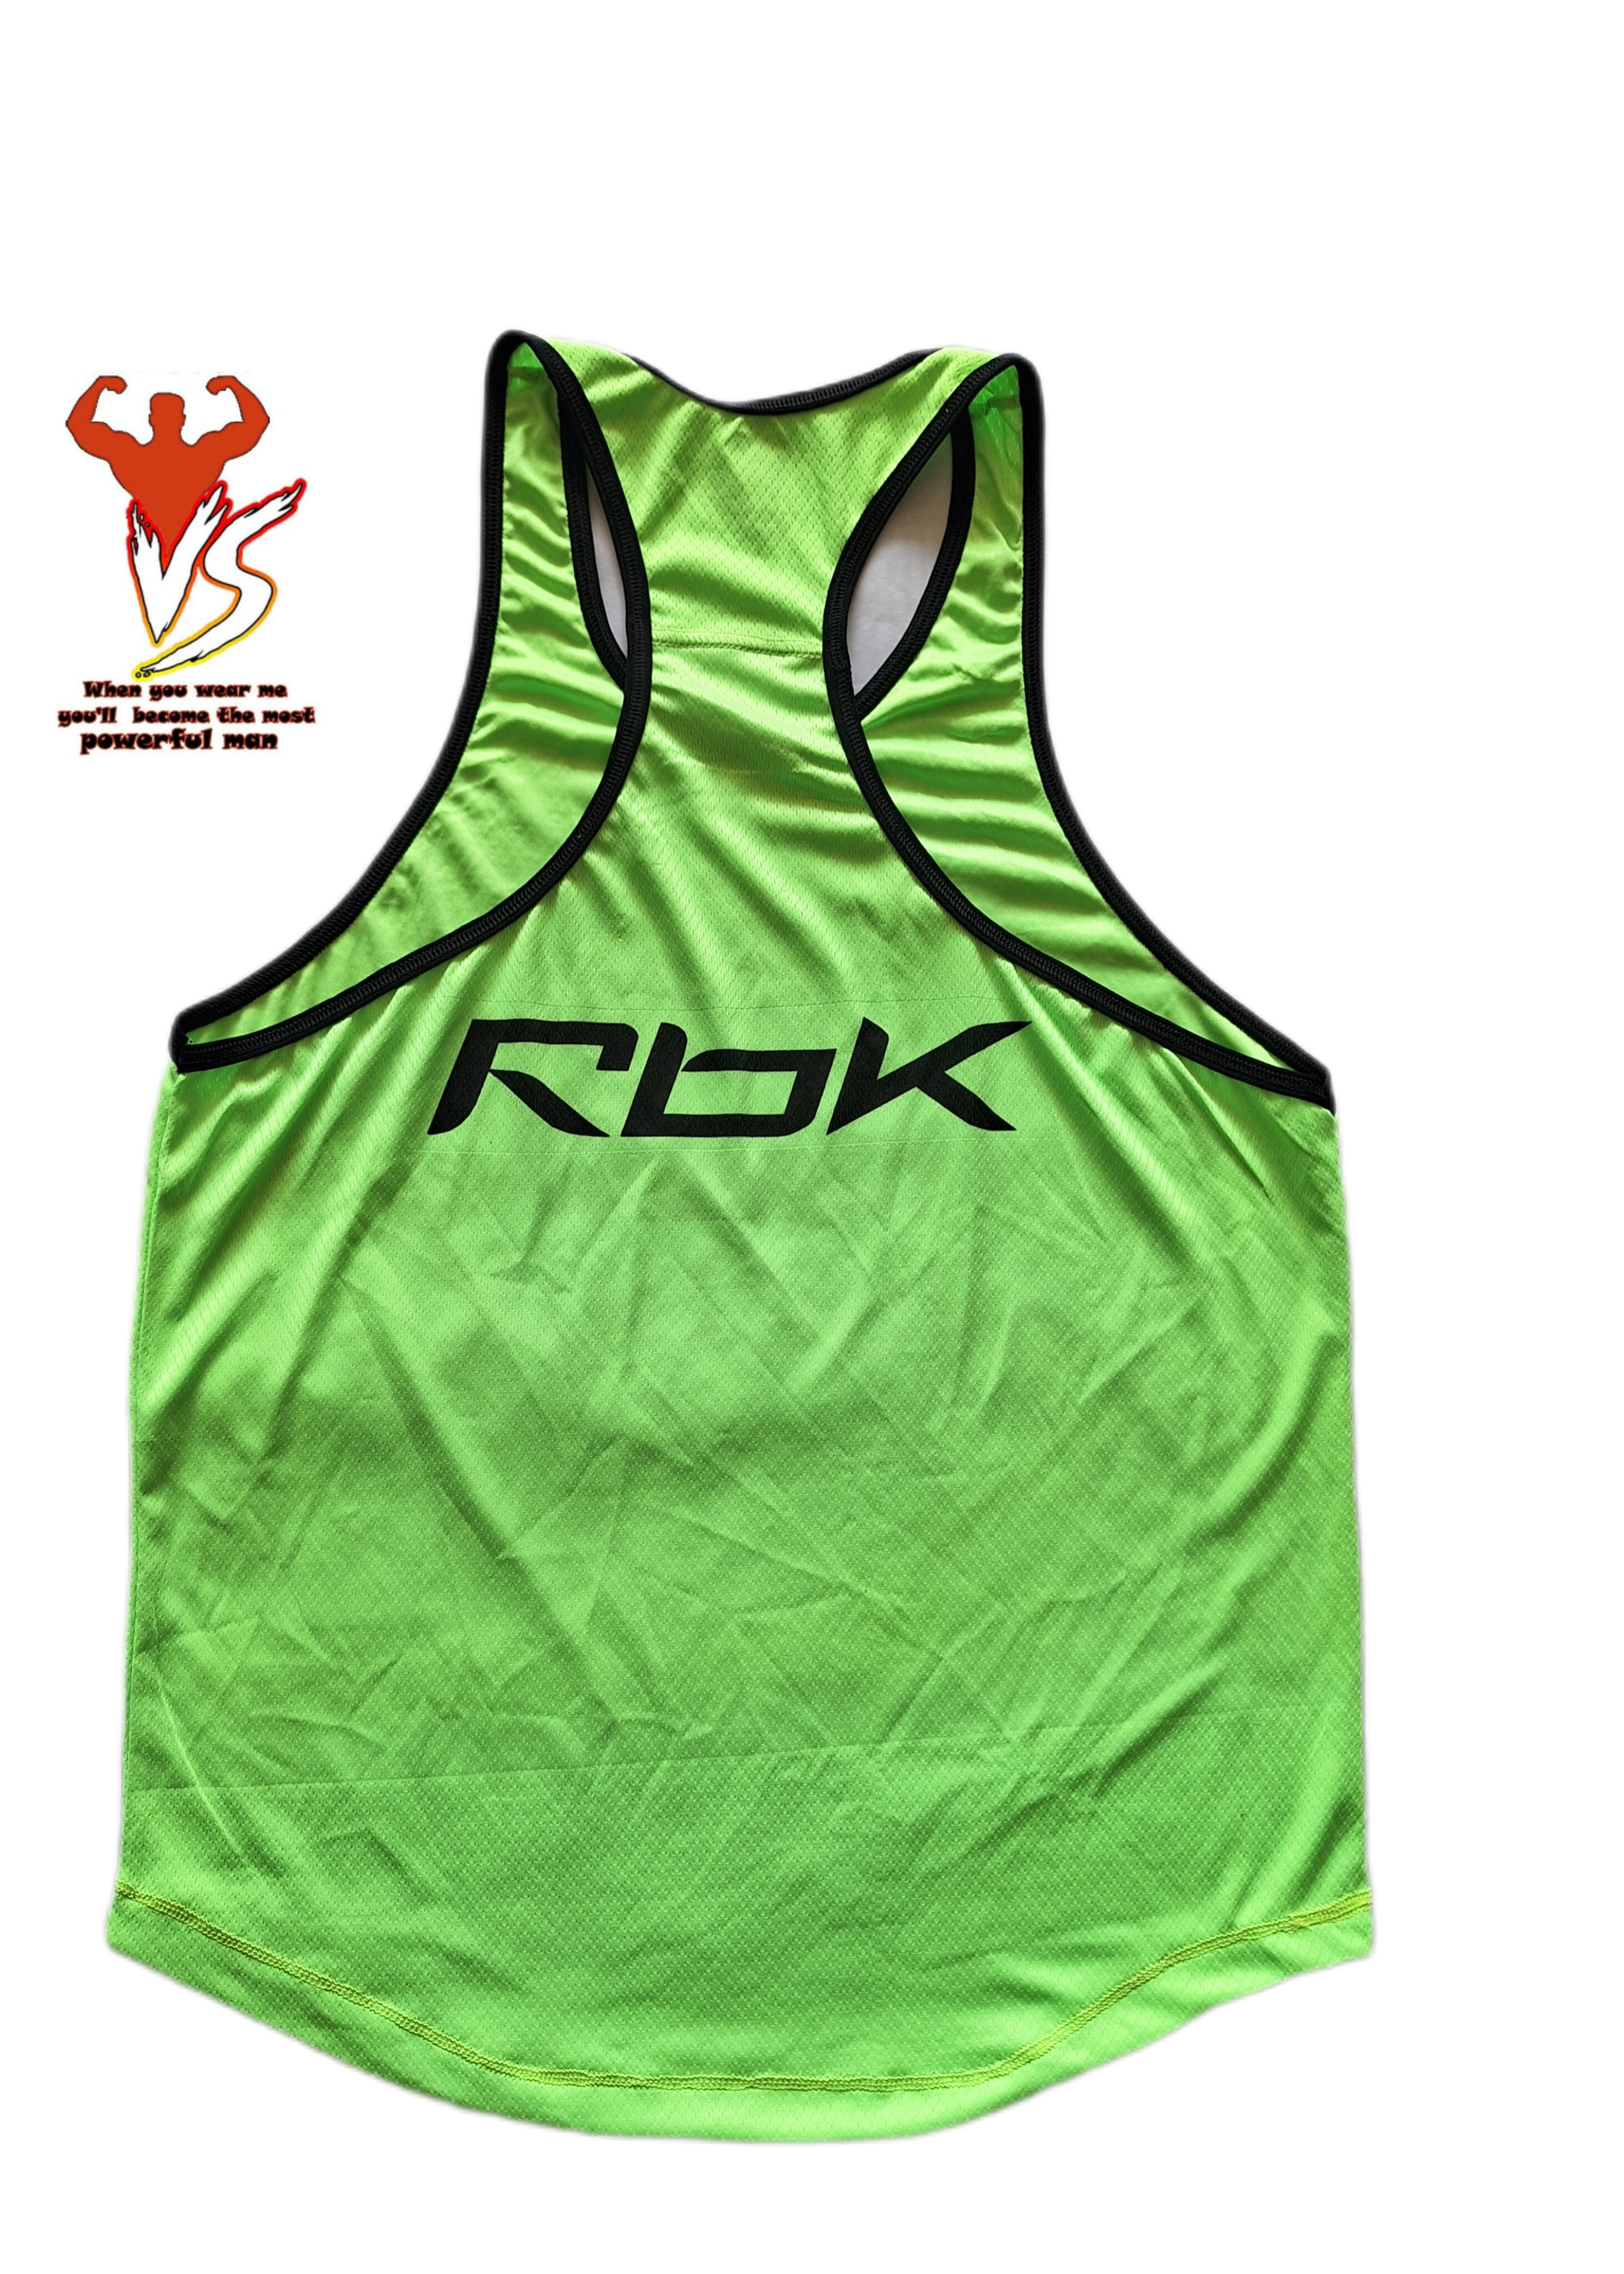 ست رکابی و شلوارک ورزشی مدل Rbk سبز فسفری